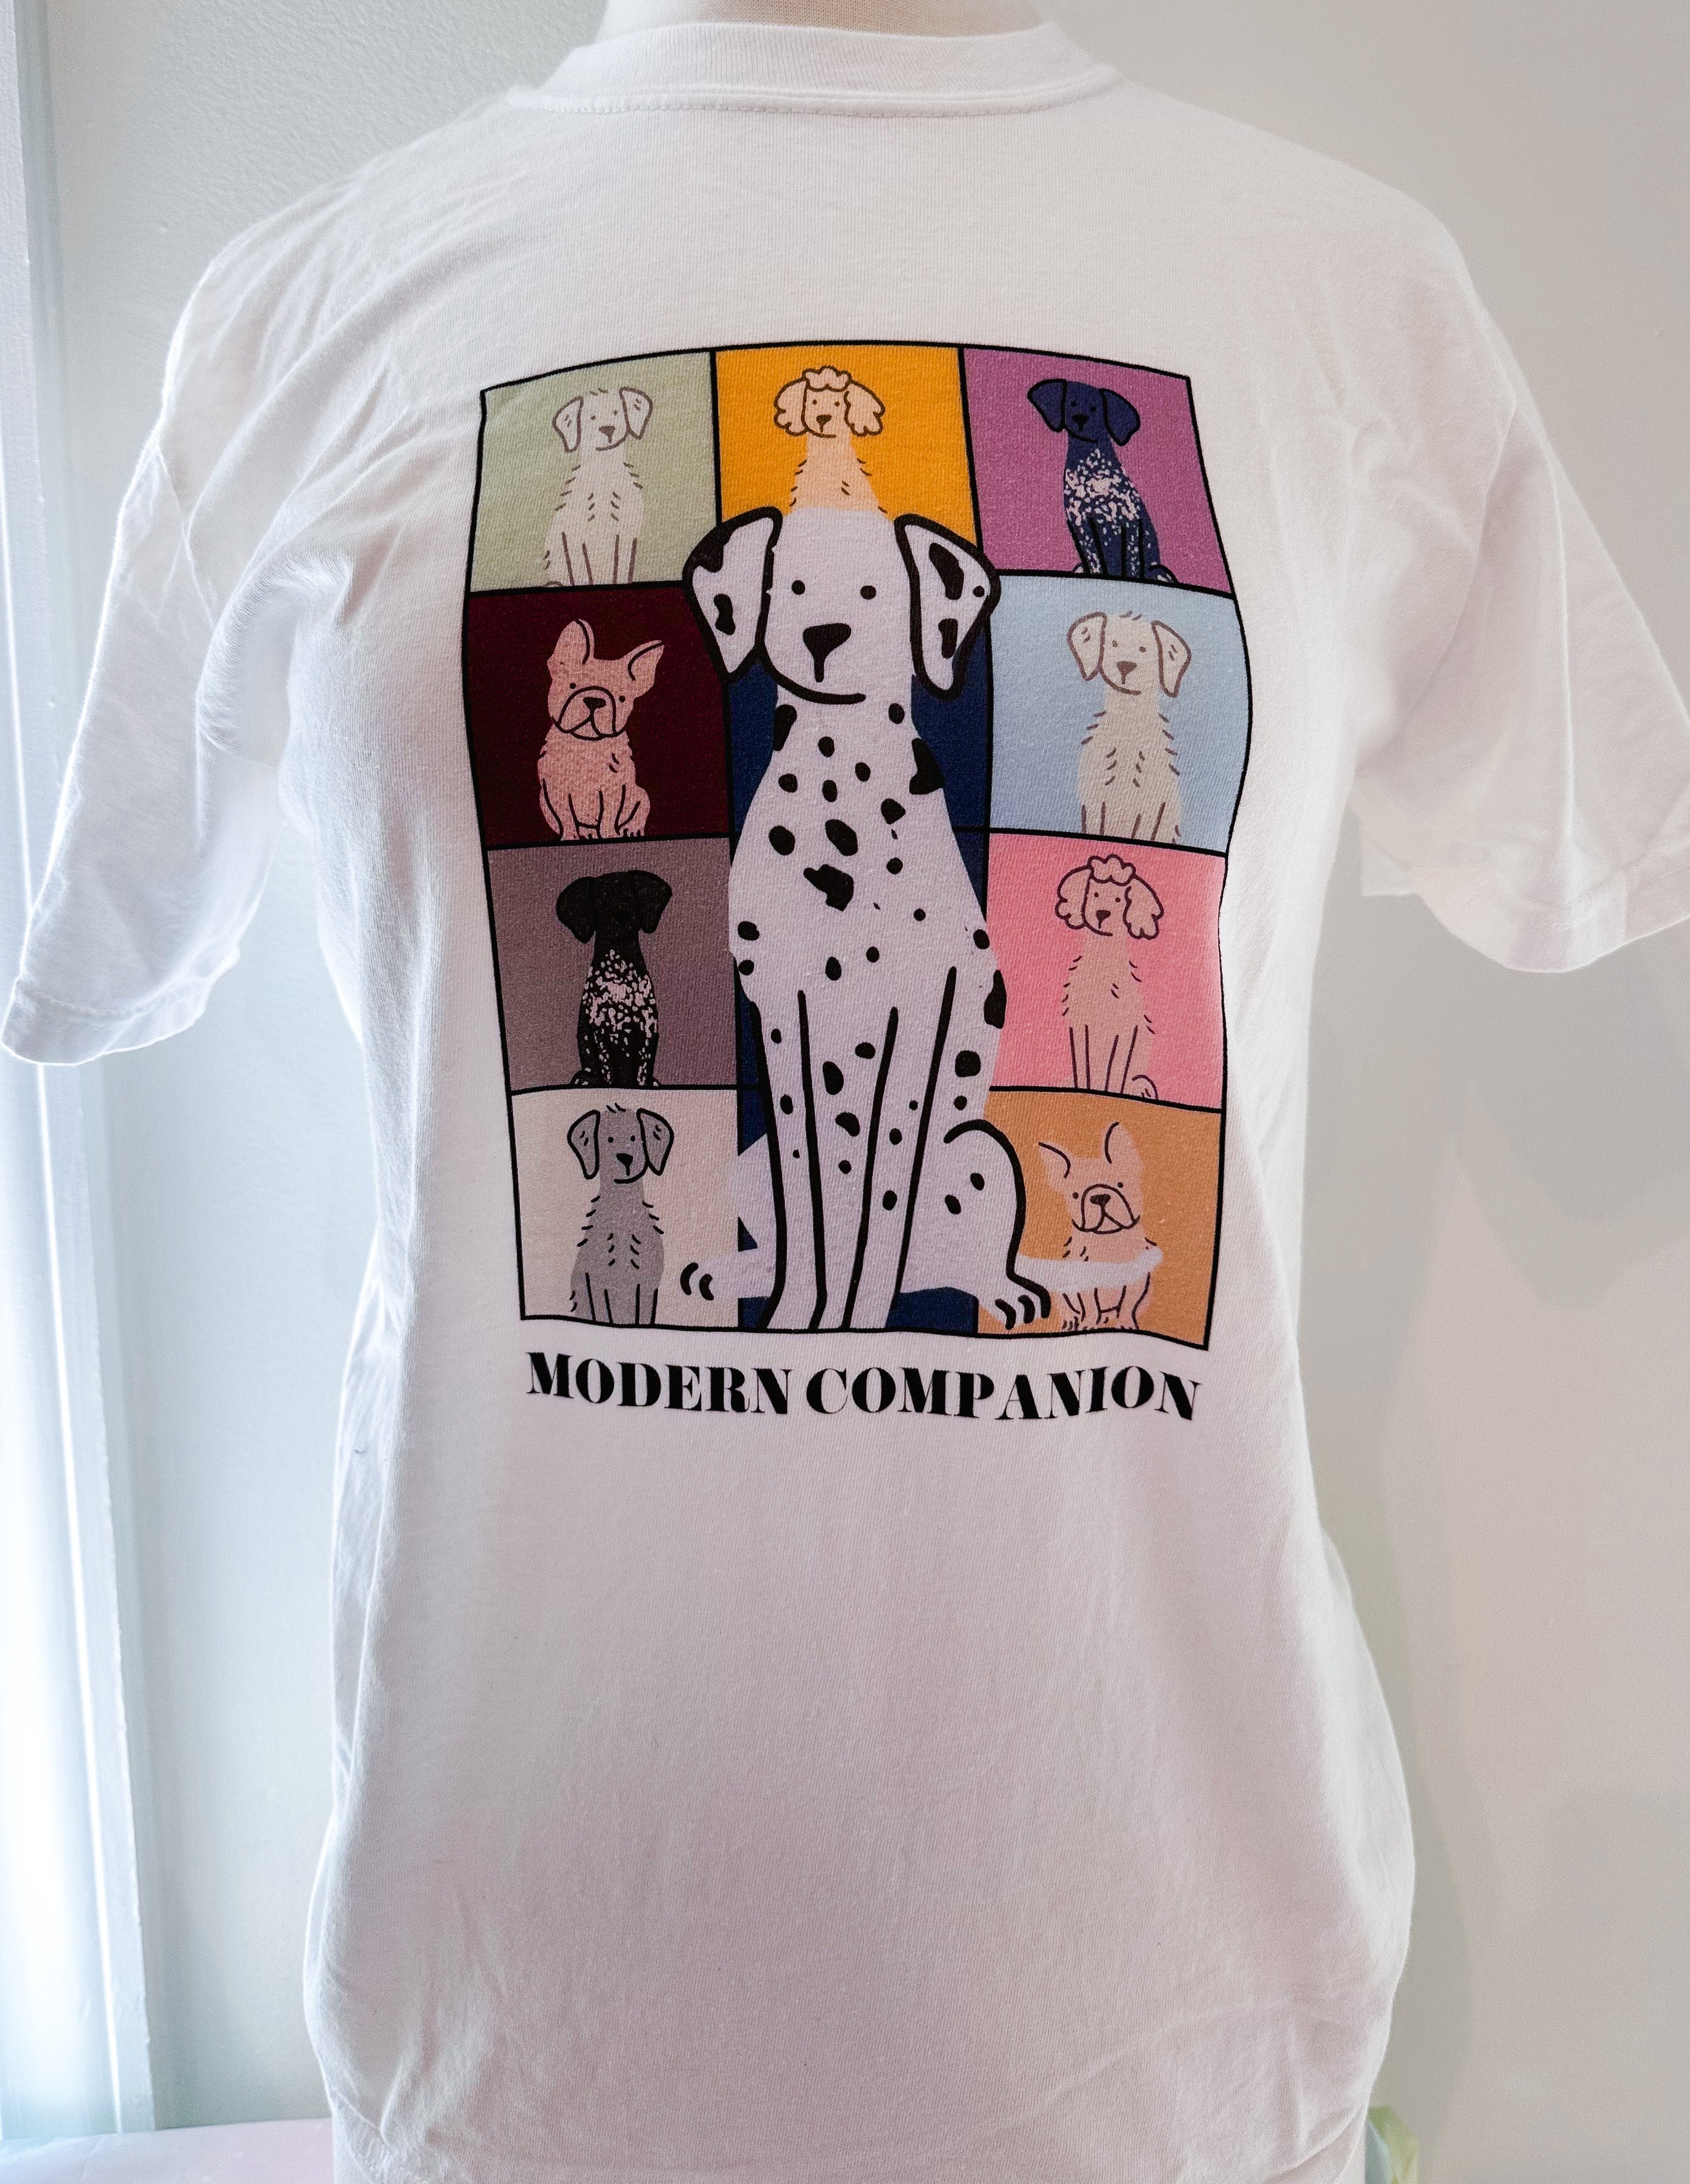 Disney 101 Dalmatians Take a Walk T-Shirt